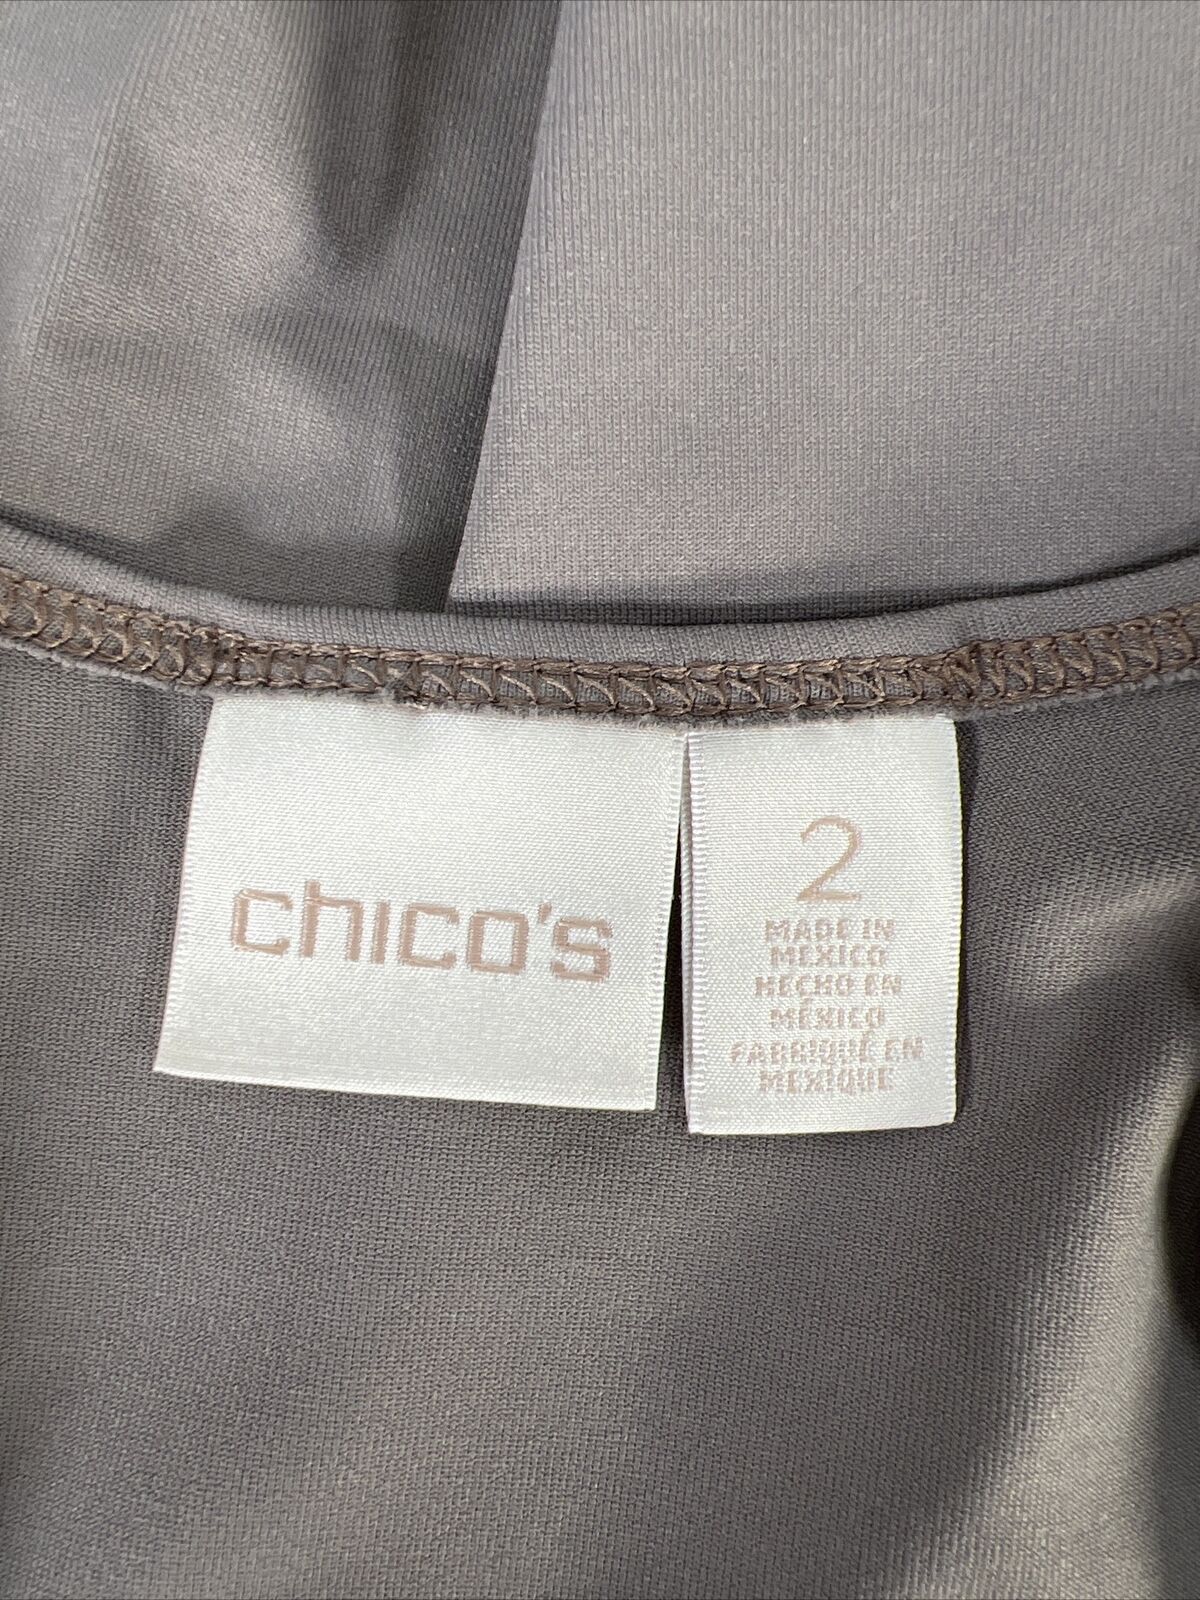 Chico's Camiseta sin mangas básica gris sin mangas para mujer - 2/US L